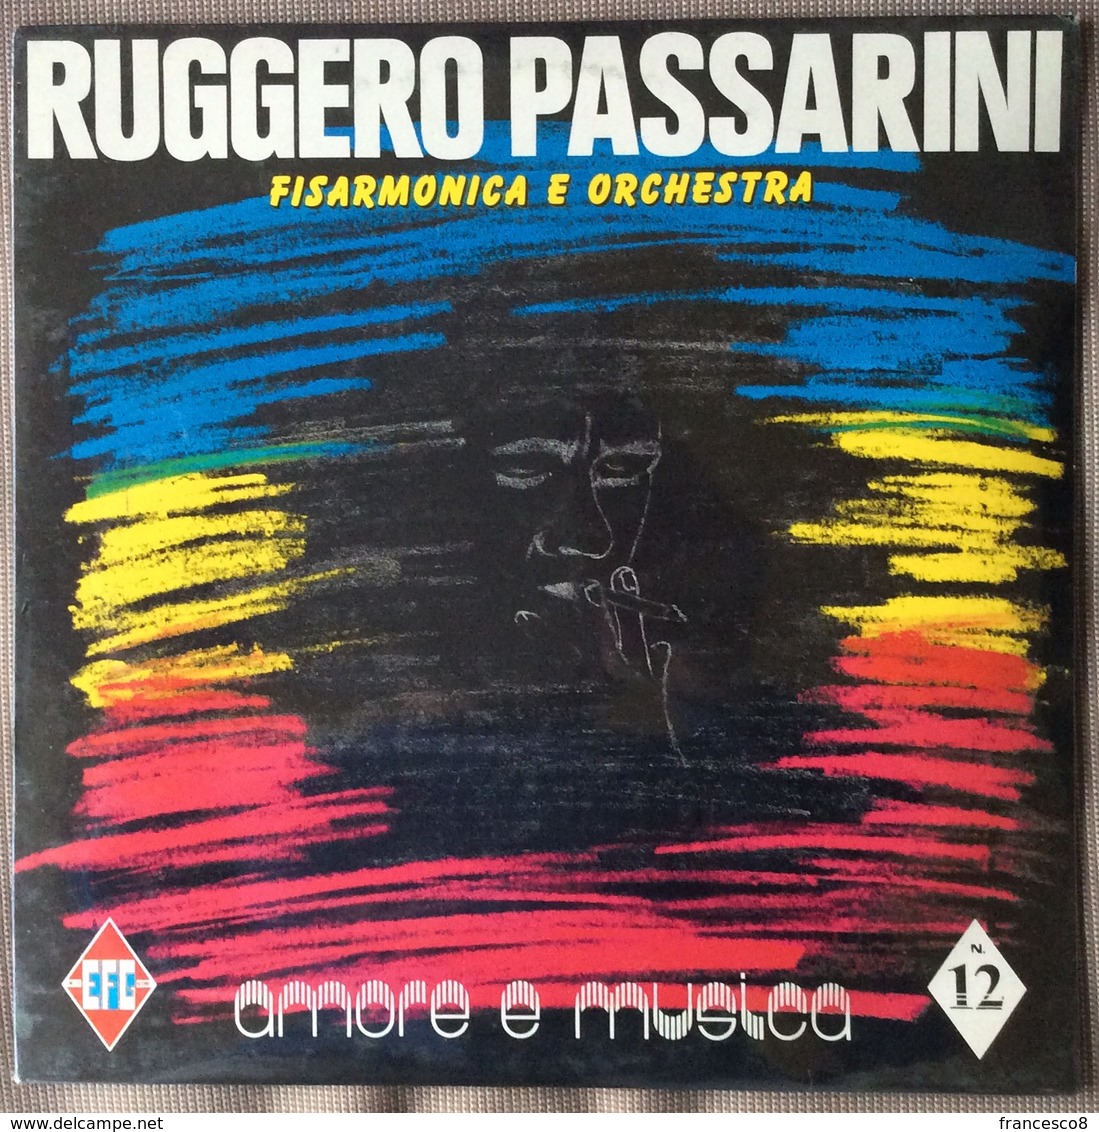 LP 33 - RUGGERO PASSARINI FISARMONICA E ORCHESTRA . AMORE E MUSICA N 12 - Sonstige - Italienische Musik